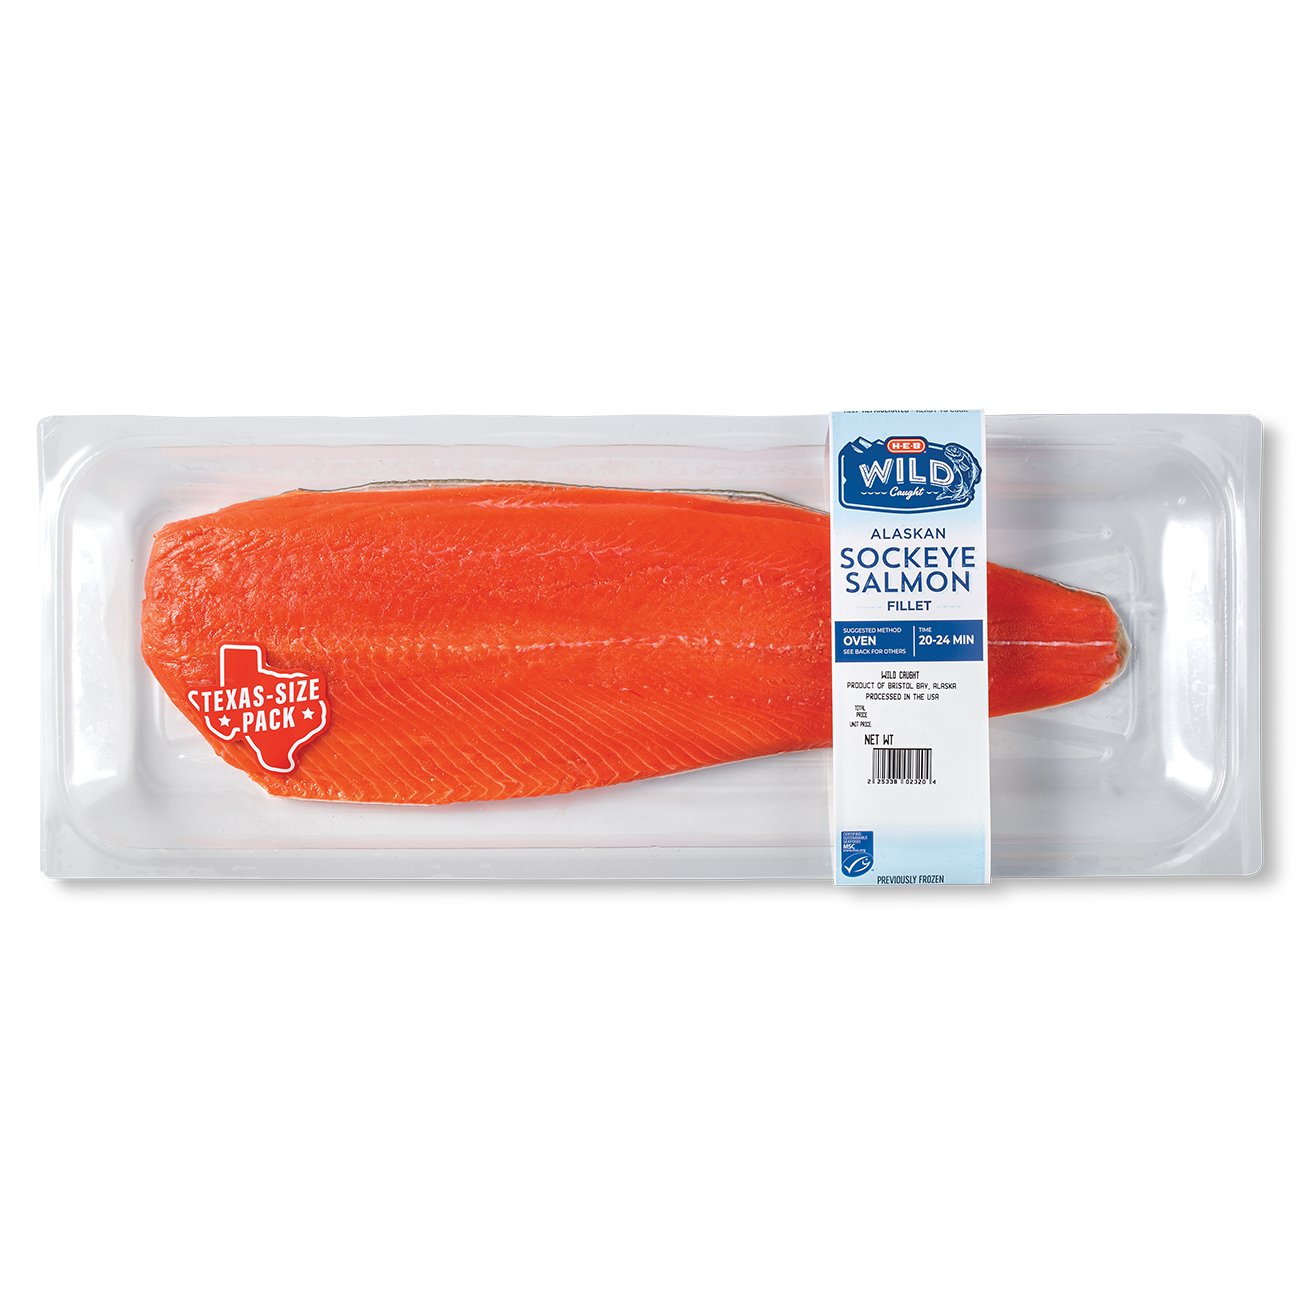 H-E-B Wild Caught Alaskan Sockeye Salmon Fillet - Texas-Size Pack